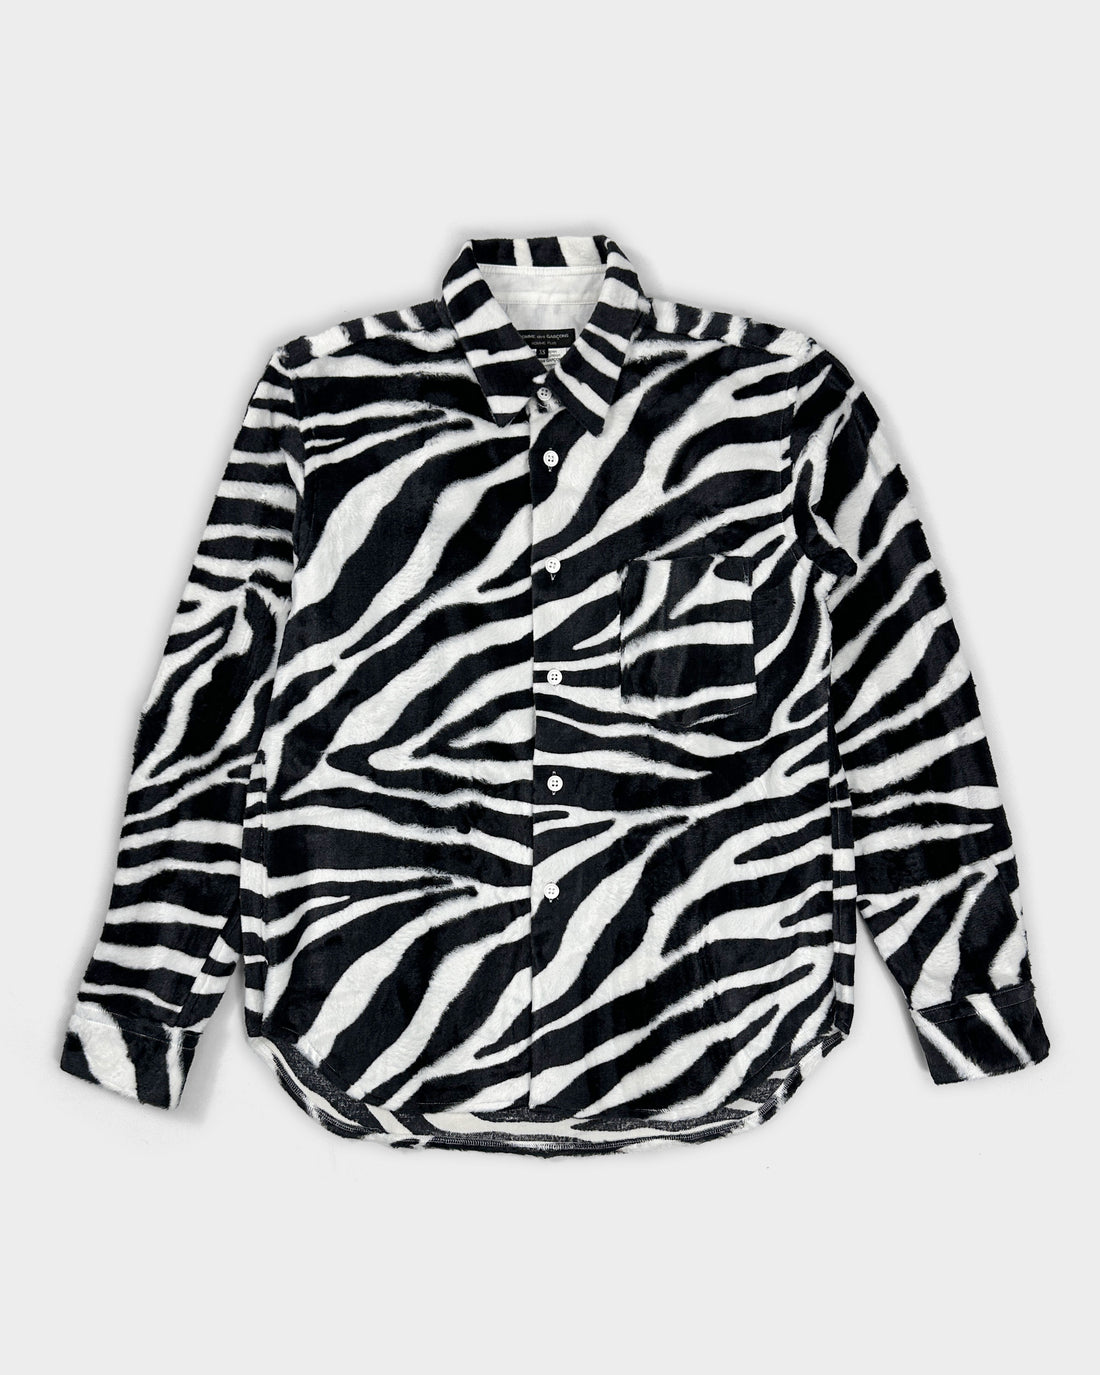 Comme des Garçons Homme Plus Fur Zebra Print Shirt 2015